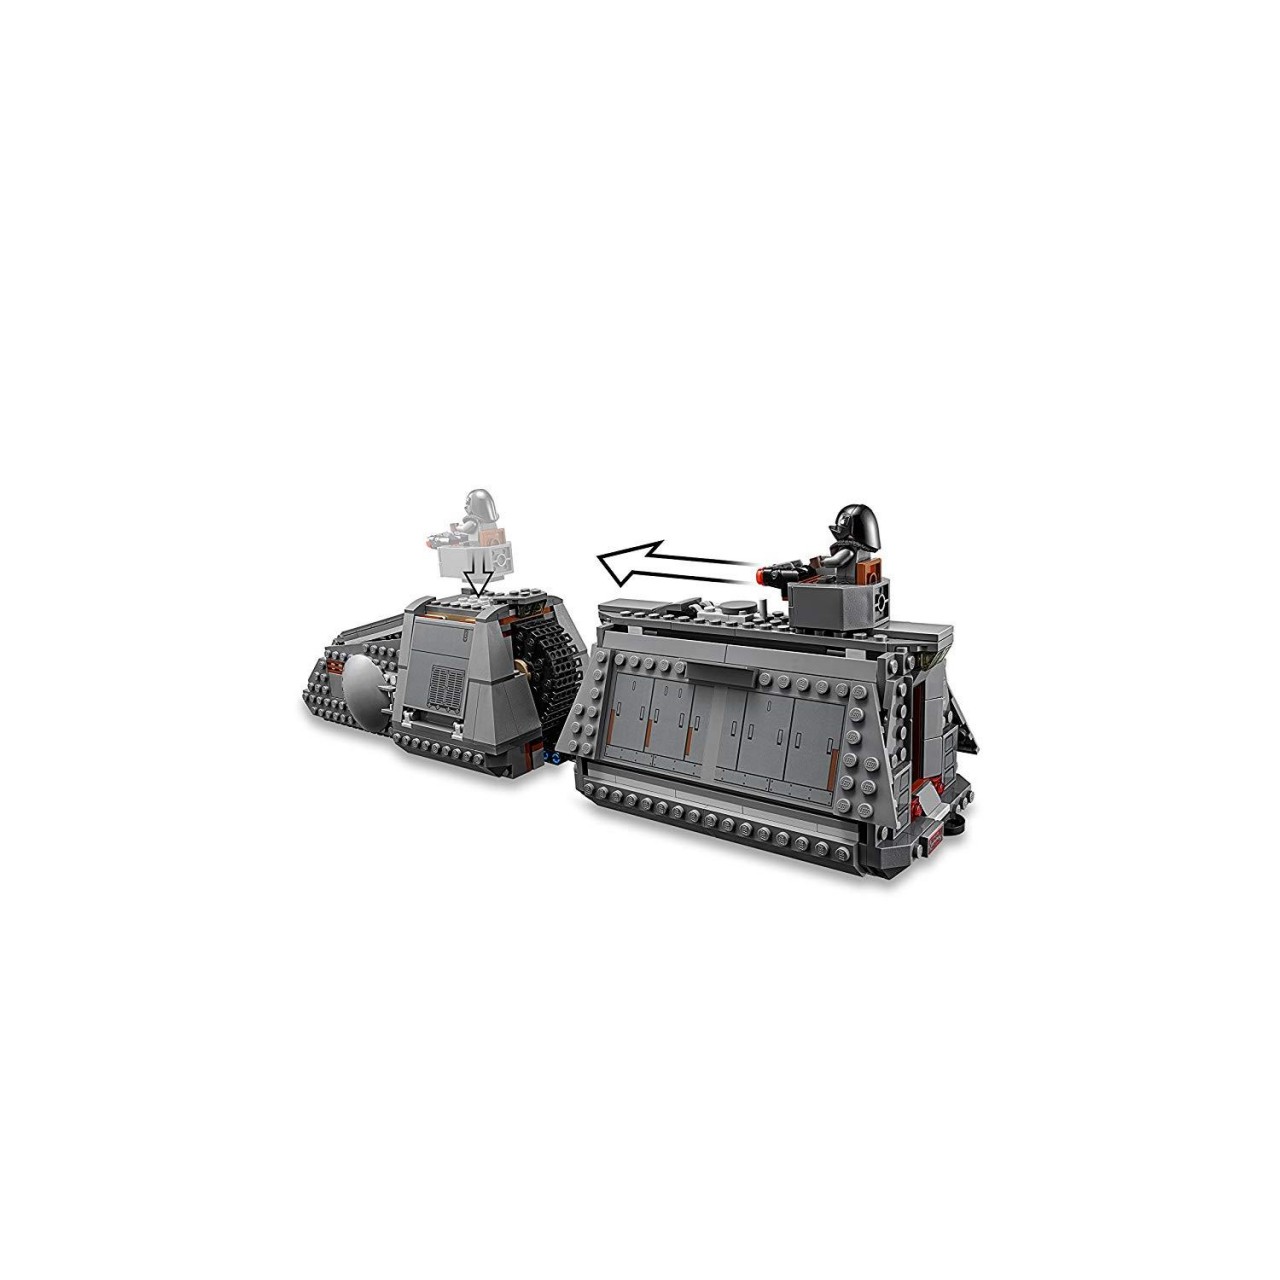 LEGO STAR WARS 75217 Imperial Conveyex Transport